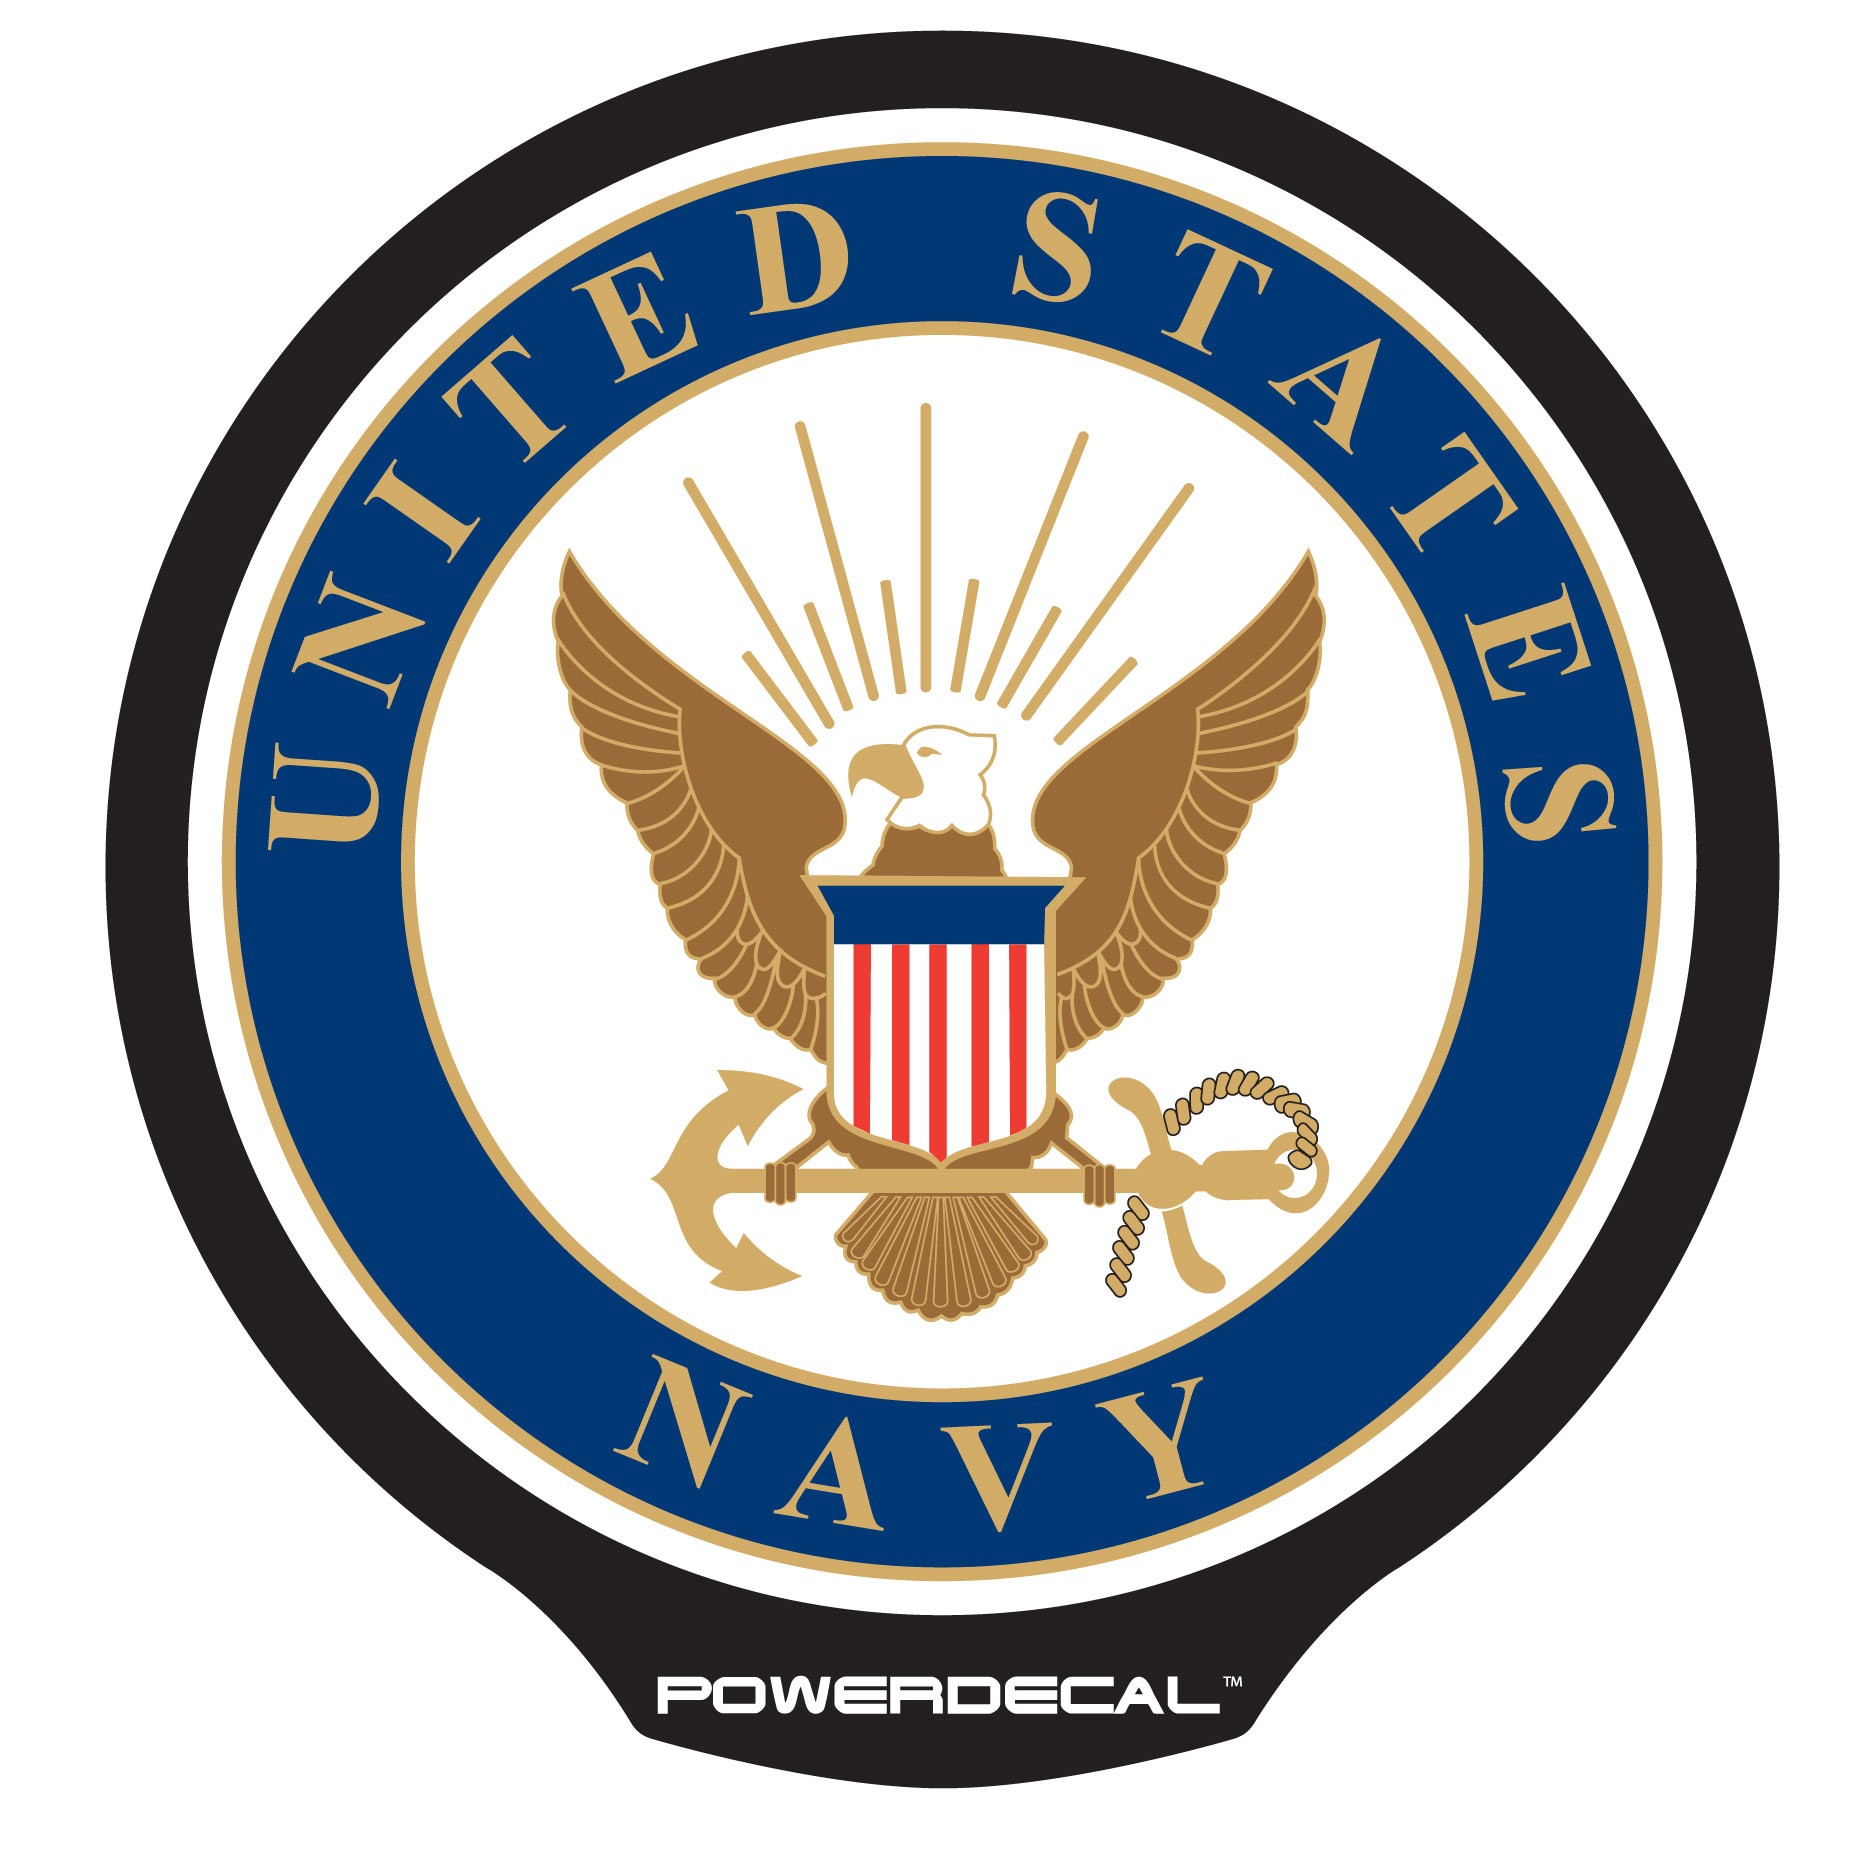 official navy logo vector